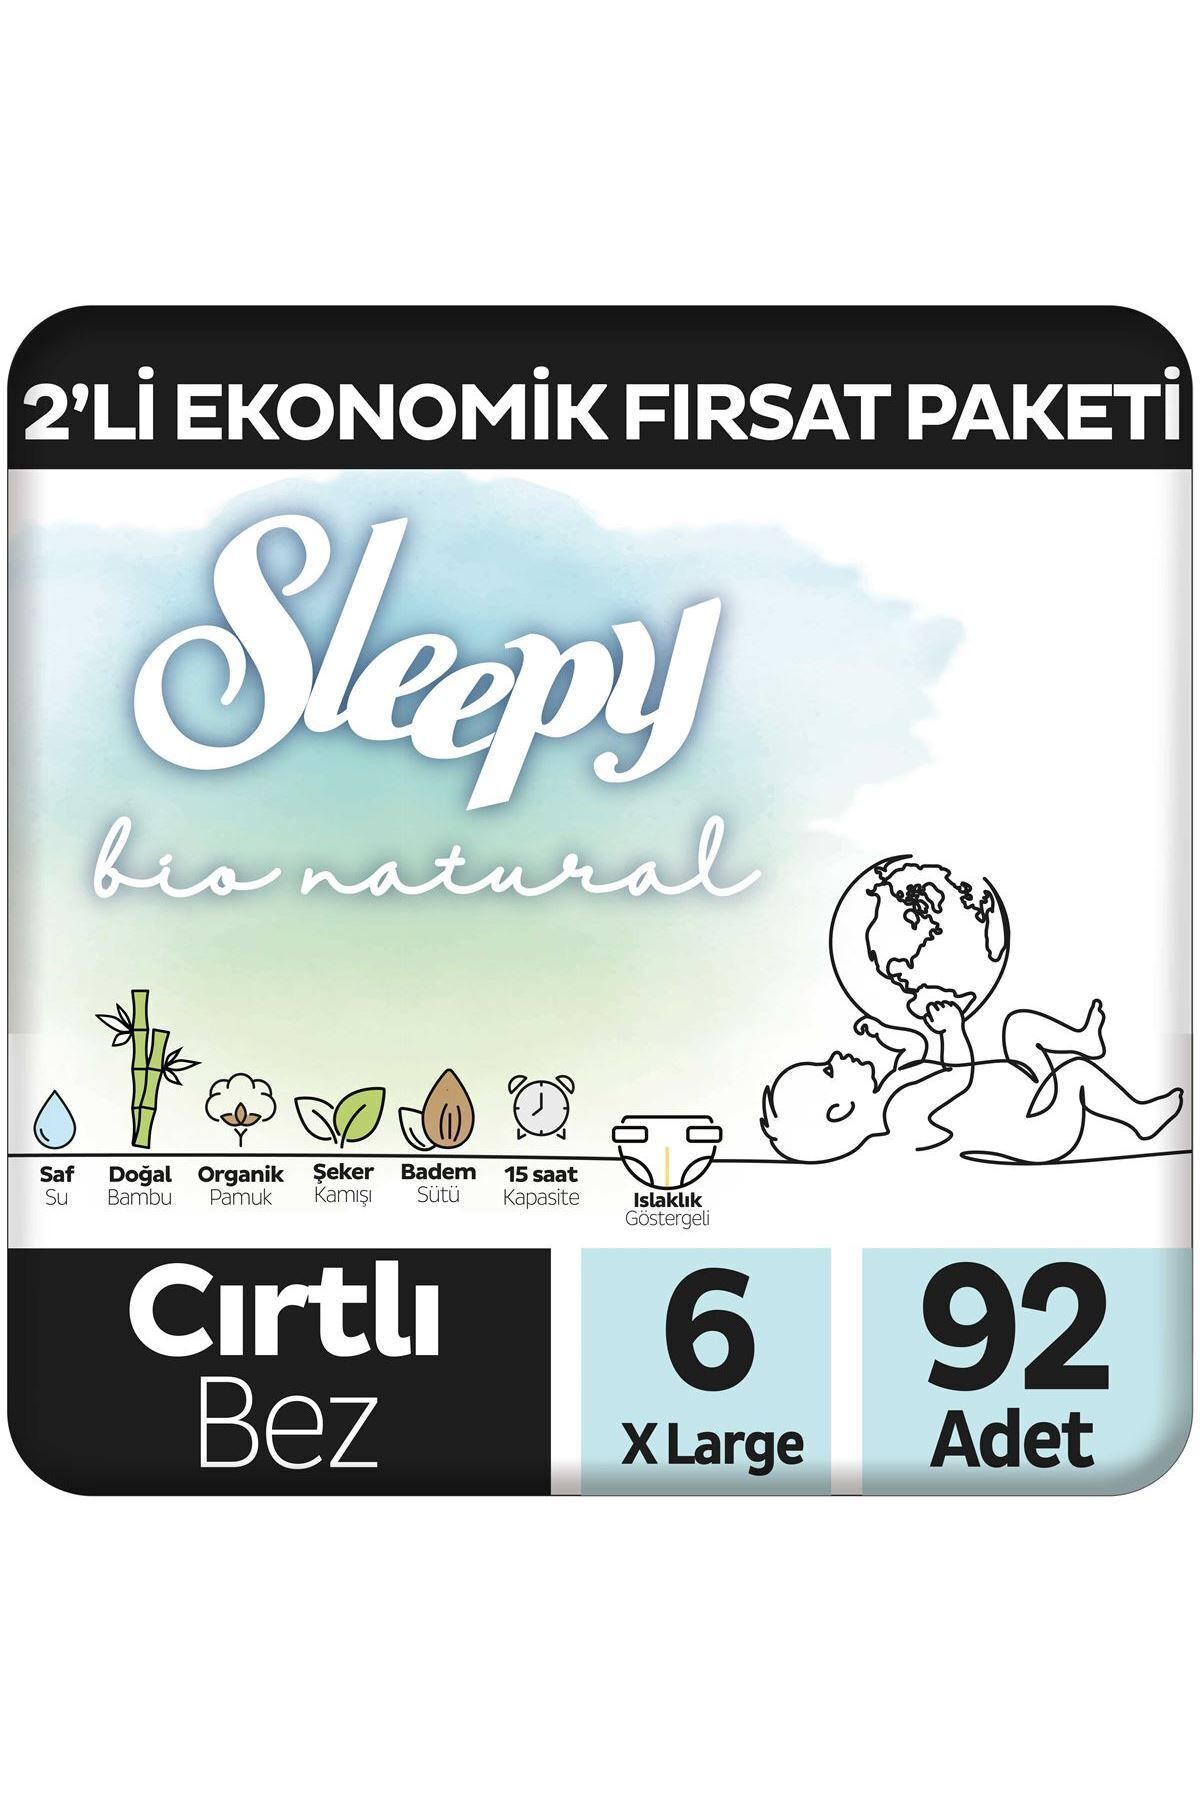 Sleepy Bio Natural 2'Li Ekonomik Fırsat Paketi Bebek Bezi 6 Numara Xlarge 92 Adet